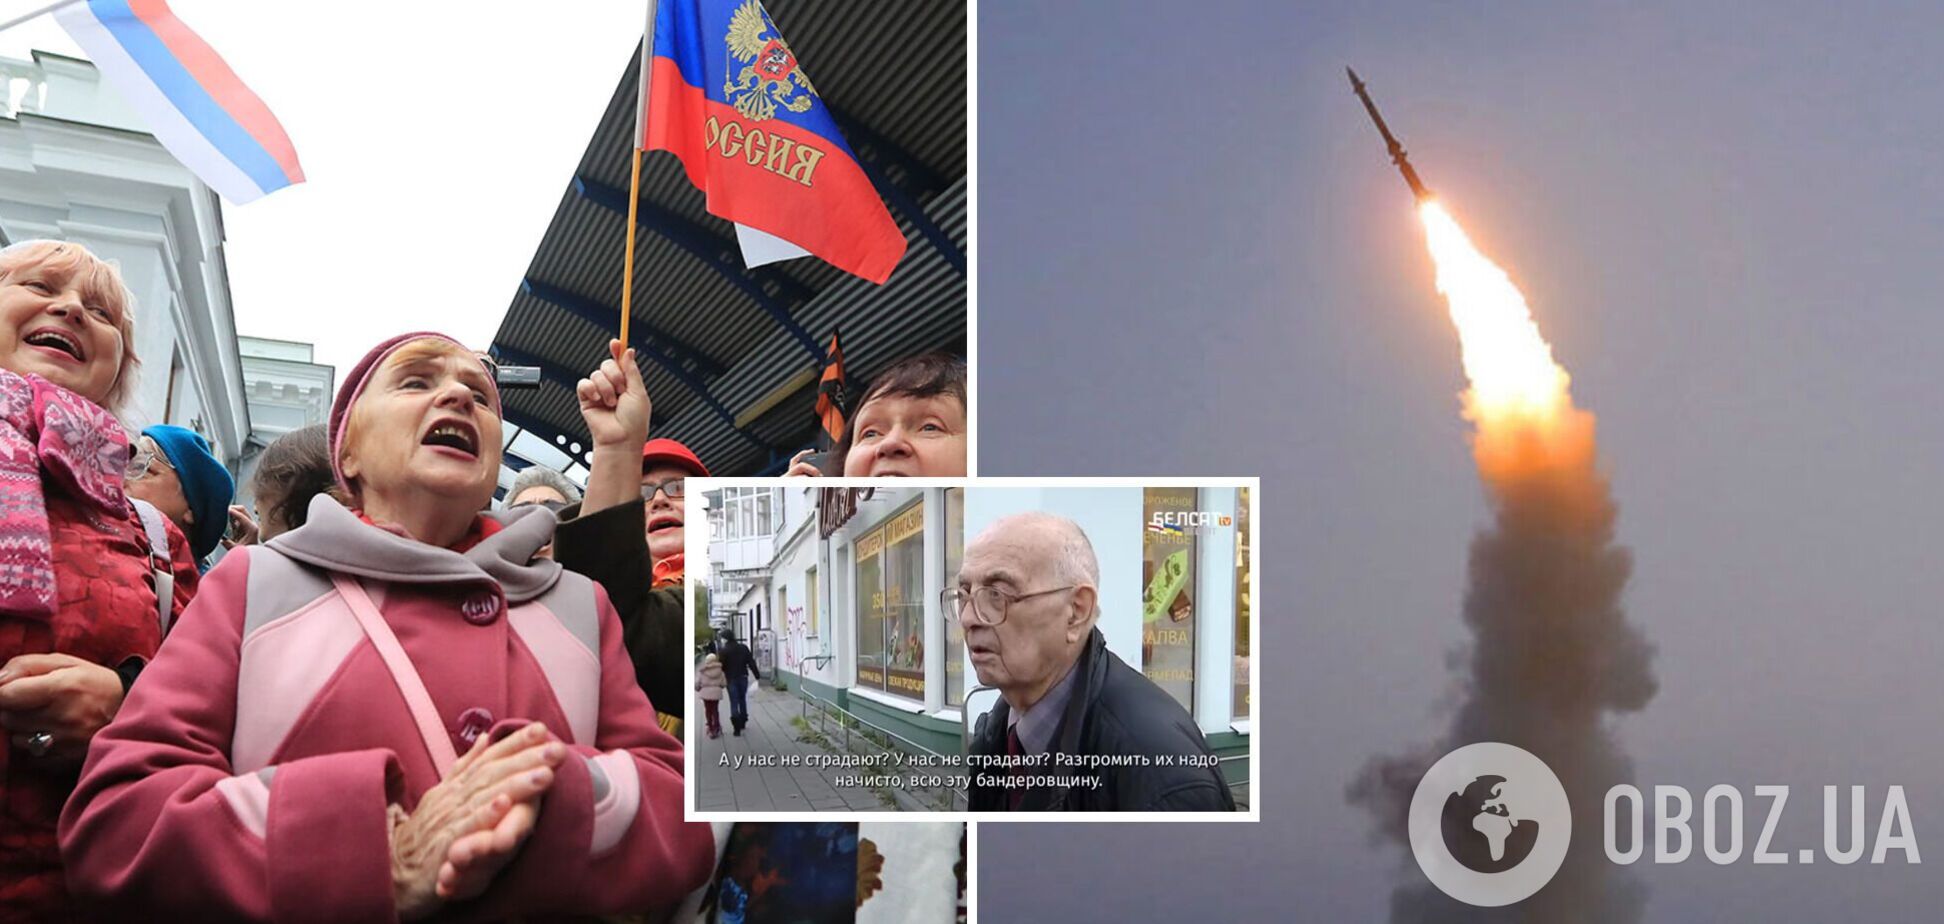 'Розгромити їх всіх треба': росіяни розповіли, що думають про масований ракетний обстріл України. Відео  